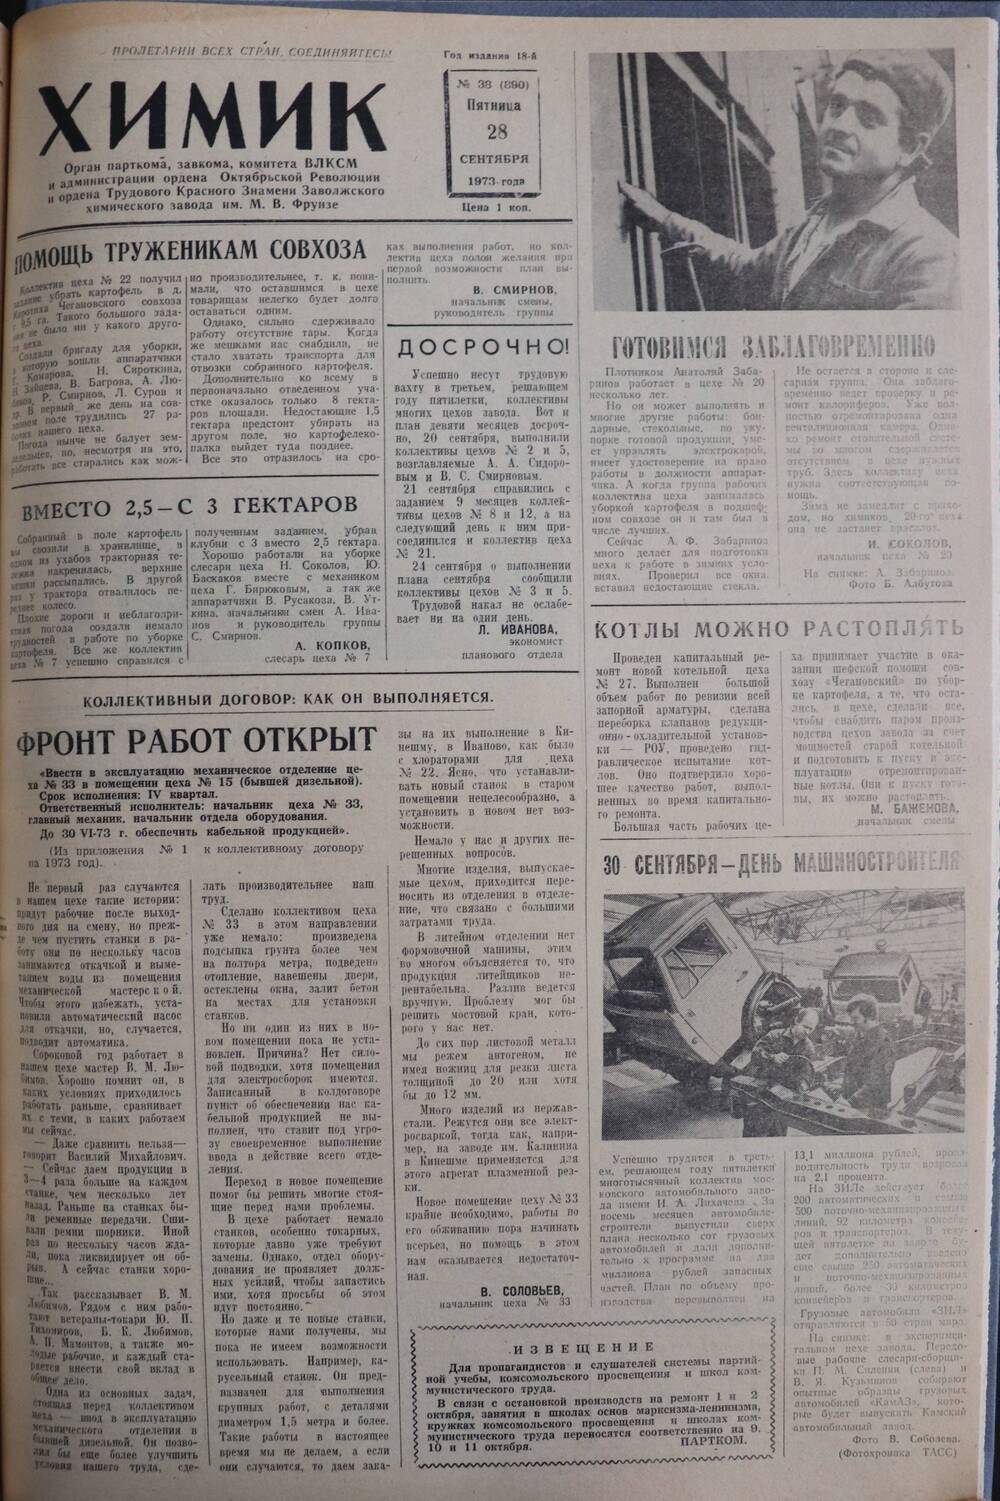 Газета «Химик» № 38 от 28 сентября 1973 года.